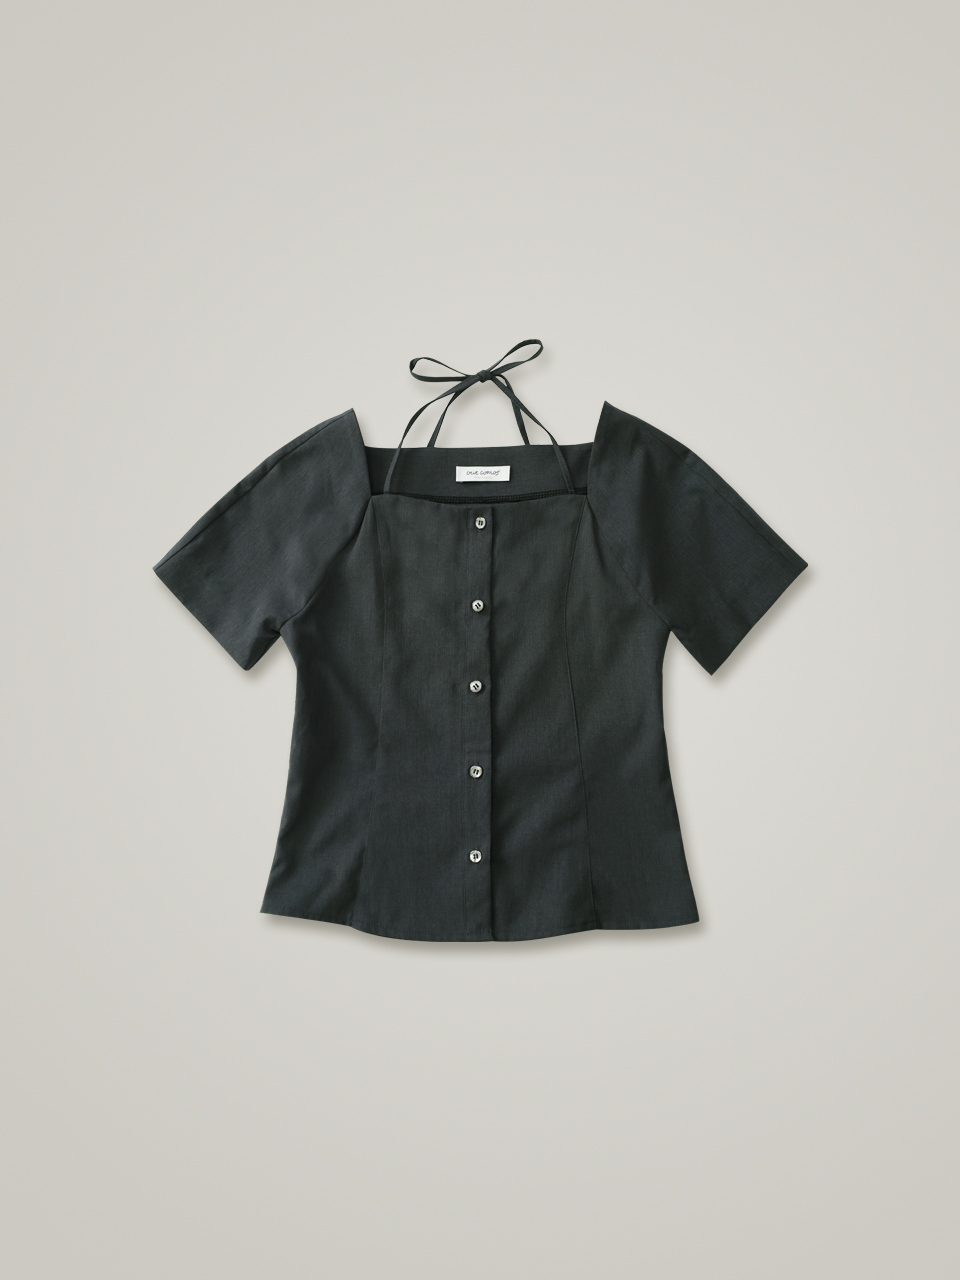 comos 897 halter-neck raglan blouse (charcoal)